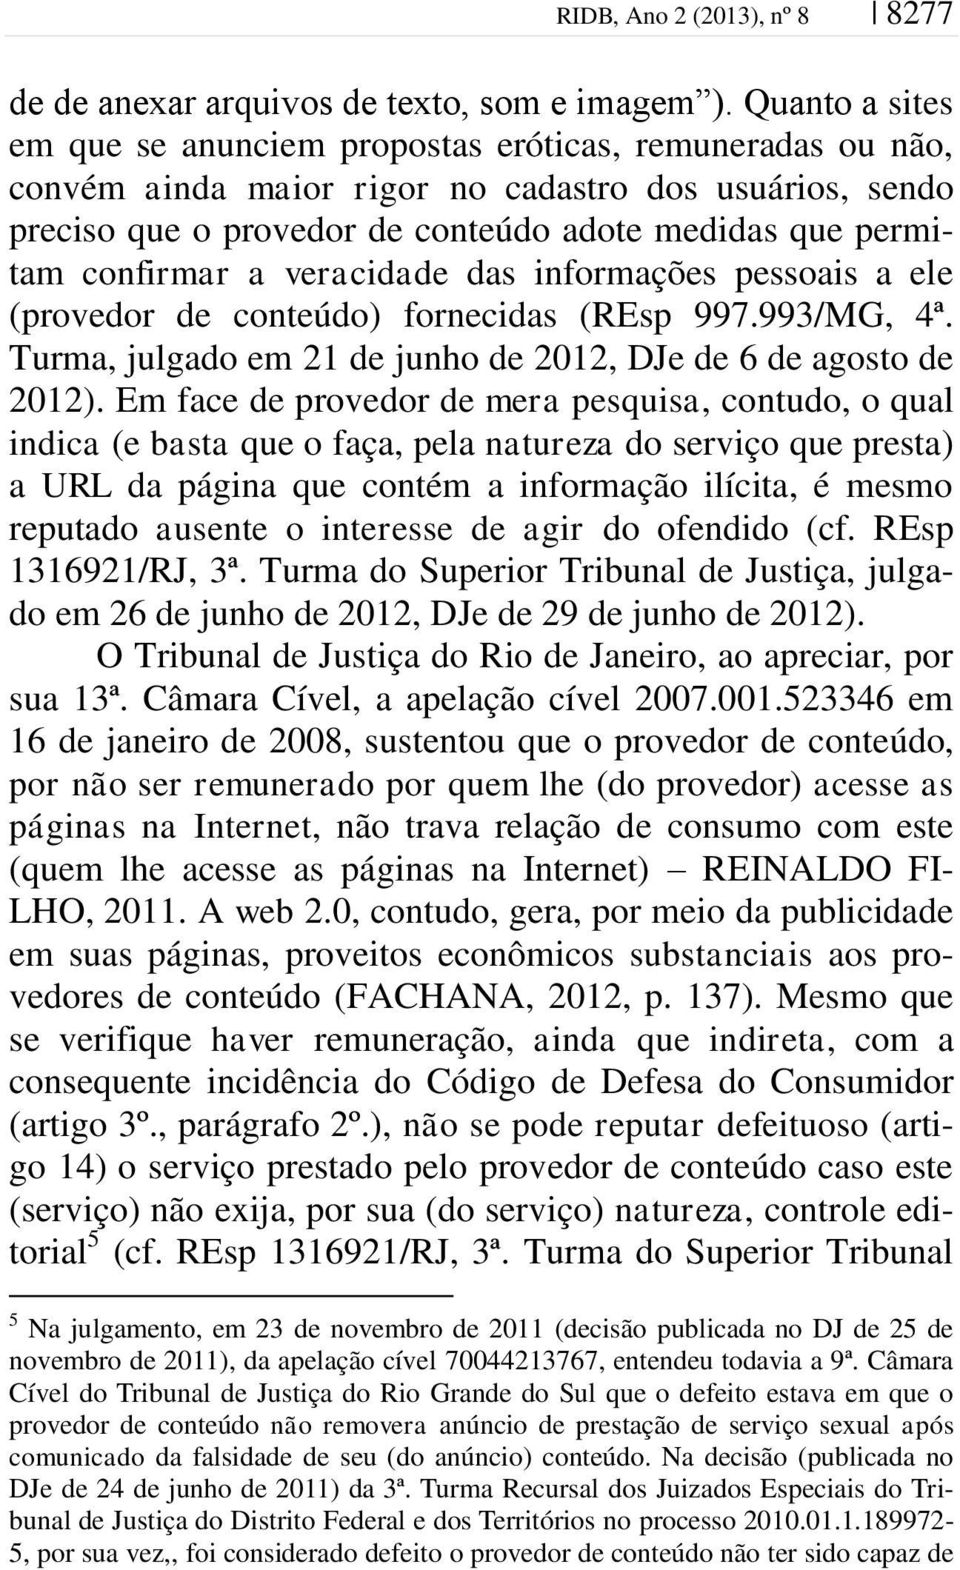 confirmar a veracidade das informações pessoais a ele (provedor de conteúdo) fornecidas (REsp 997.993/MG, 4ª. Turma, julgado em 21 de junho de 2012, DJe de 6 de agosto de 2012).